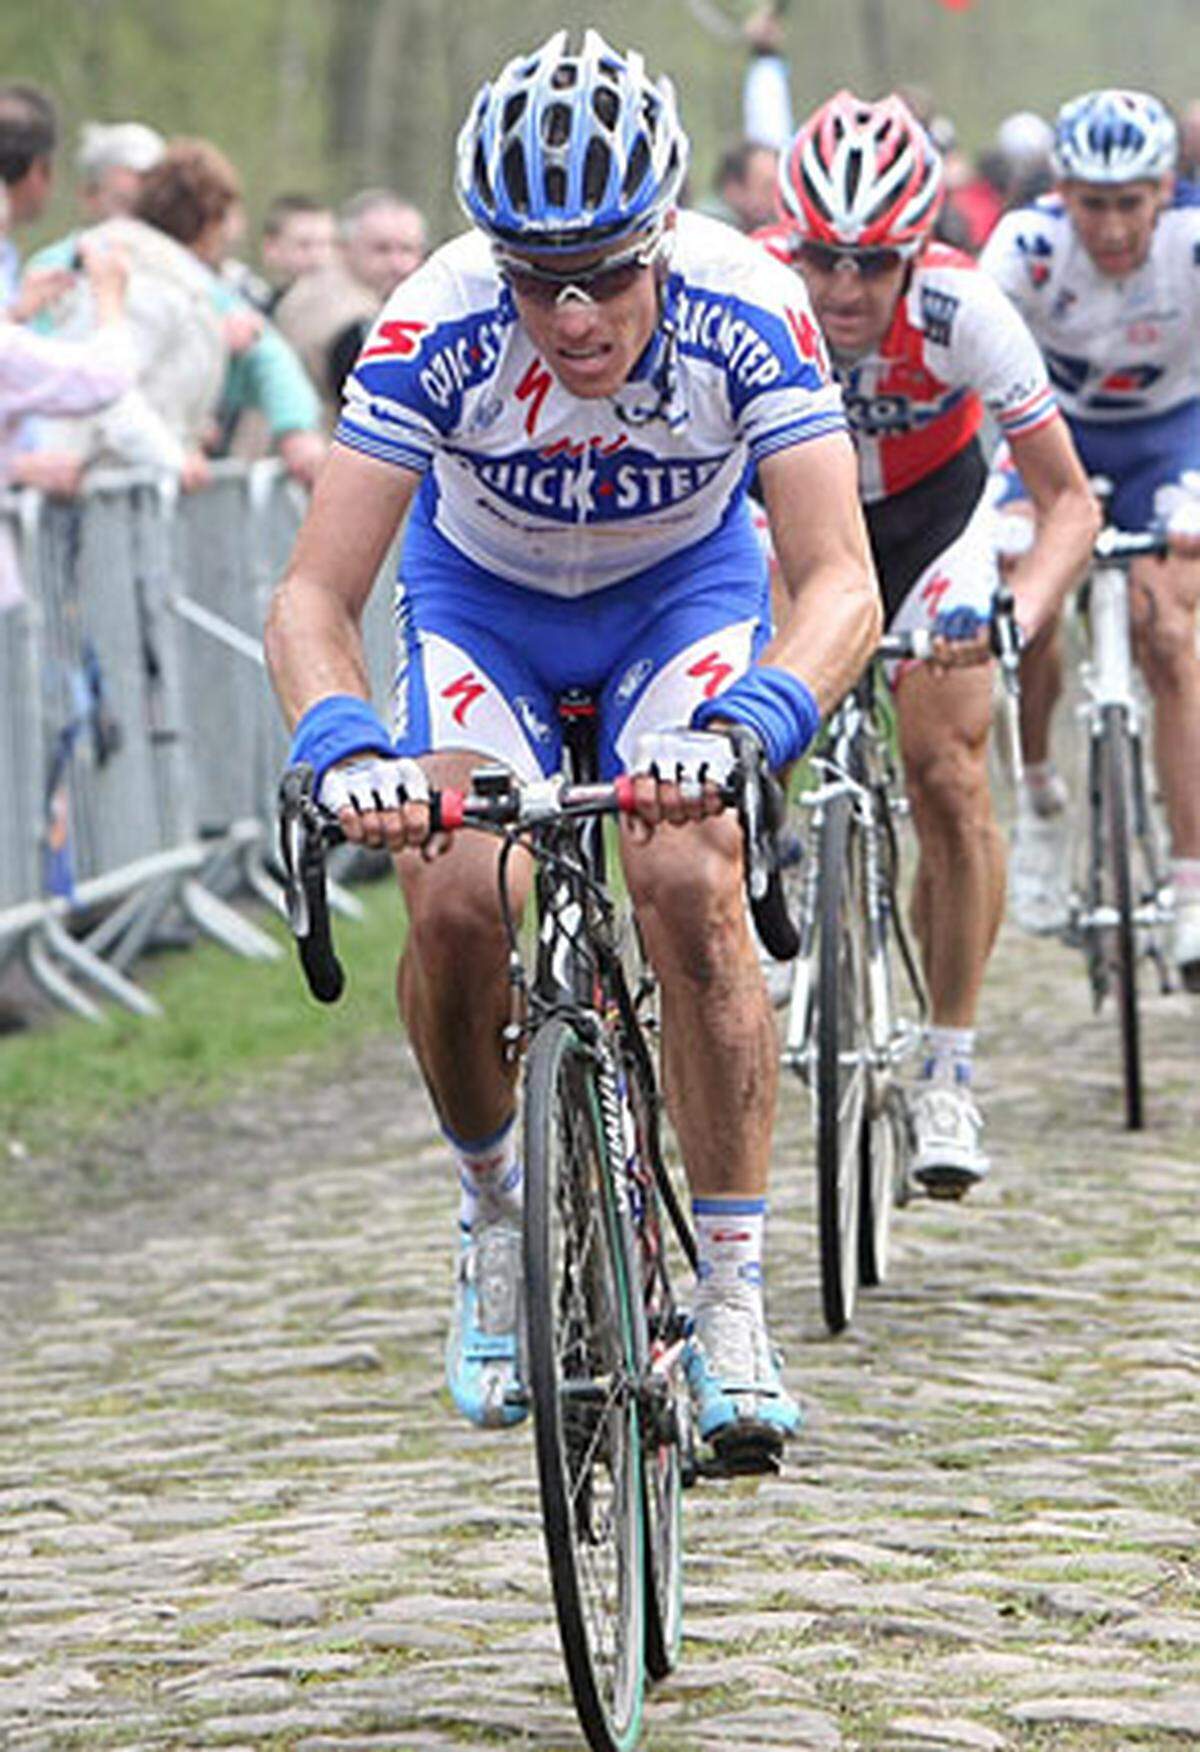 Land: Belgien  Budget: 9 Millionen Euro  Bisherige Tour-Bilanz: Sechs Teilnahmen, 14 Etappensiege, zwei Bergtrikots, ein Grünes Trikot (Sieger der Punktewertung)  Wichtigste Fahrer 2009: Sylvain Chavanel (FRA), Jerome Pineau (FRA)